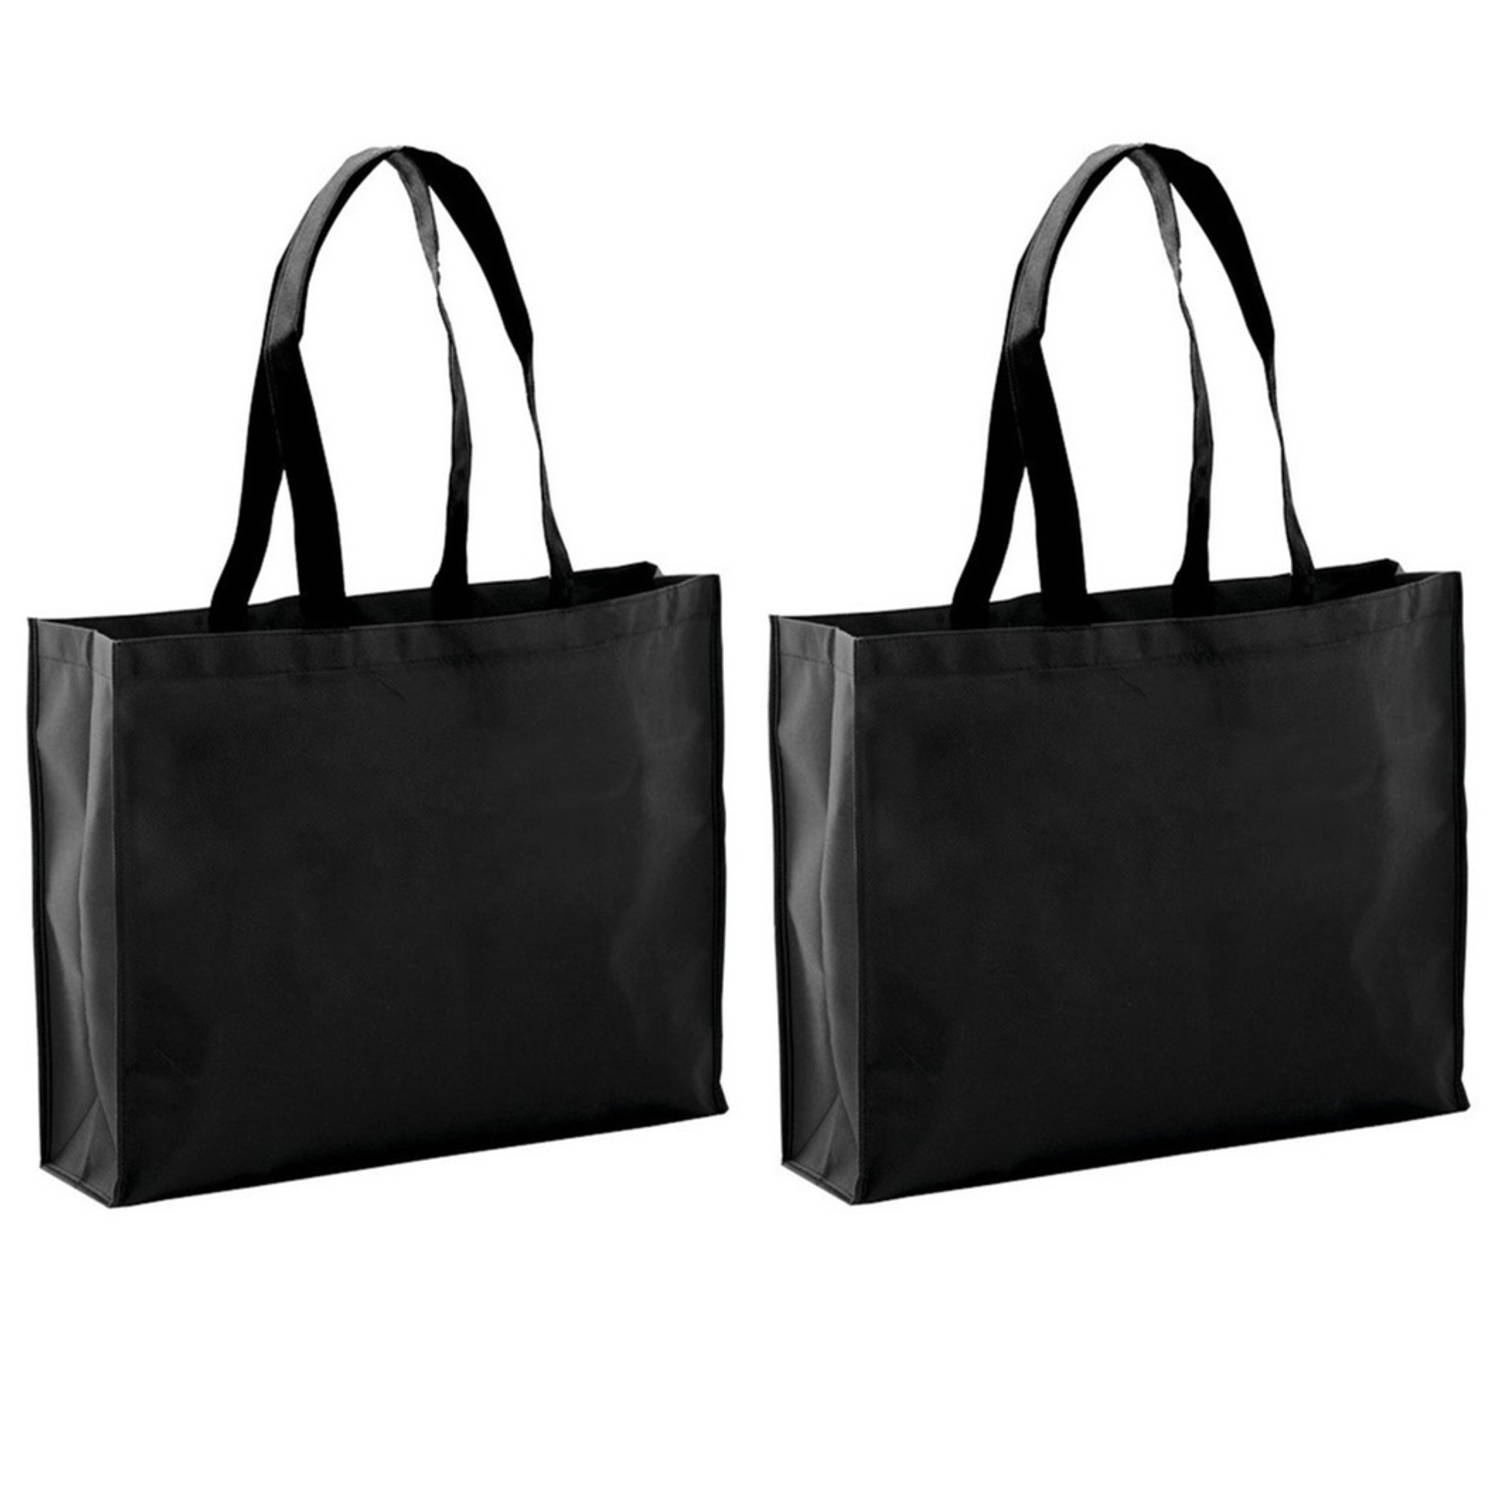 2x Stuks Draagtassen-schoudertassen-boodschappentassen In De Kleur Zwart 40 X 32 X 11 Cm Boodschappe